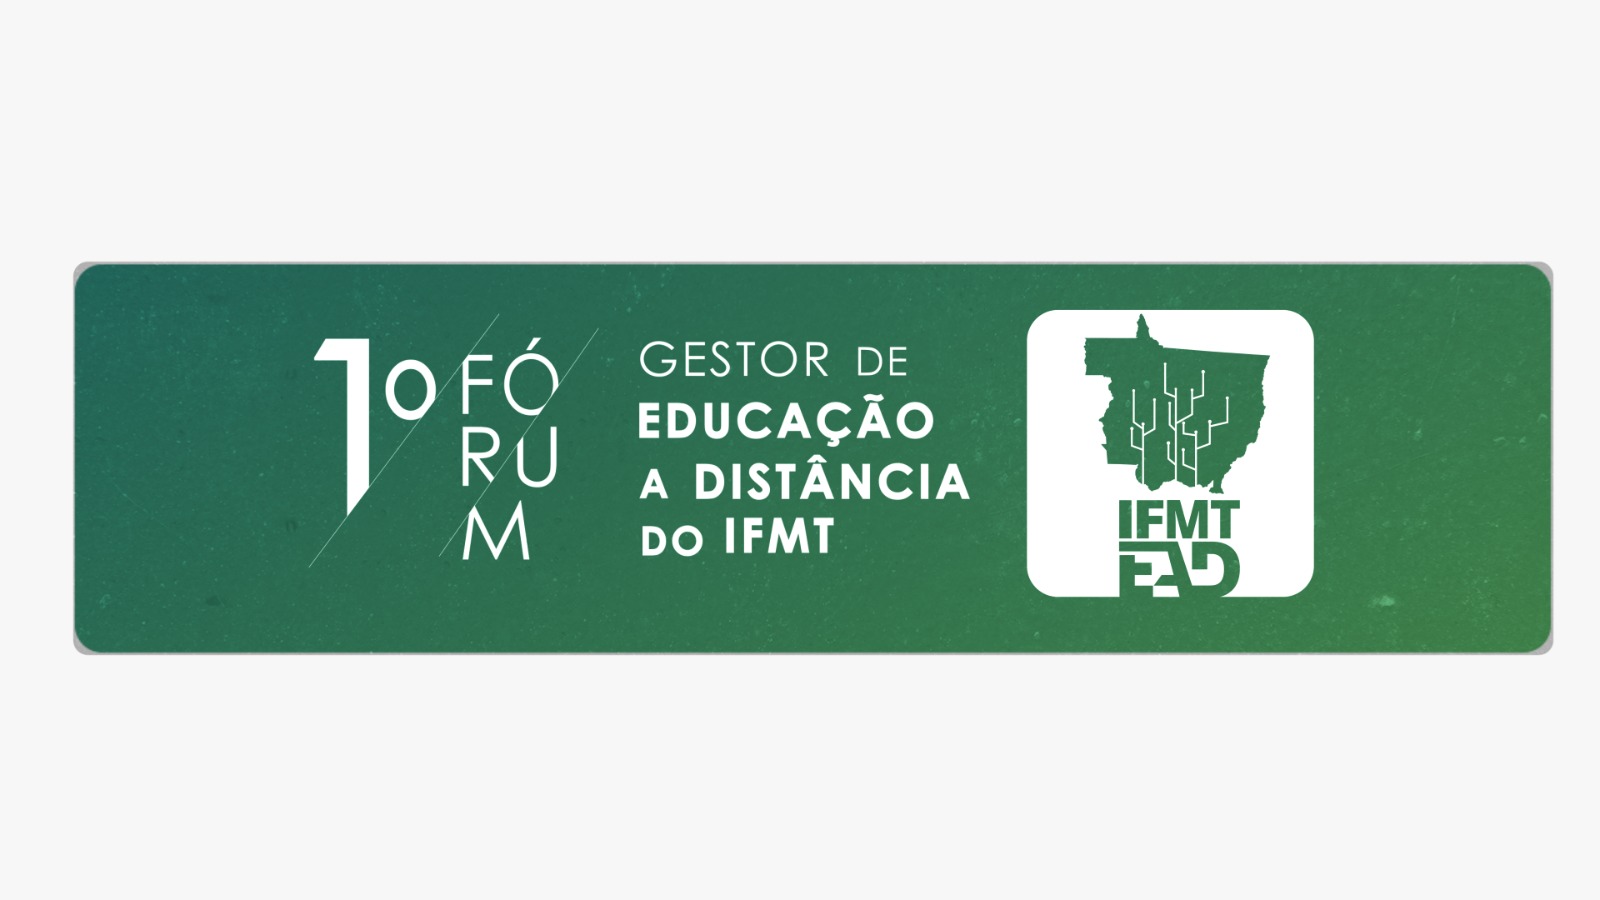 1º FÓRUM GESTOR DE EDUCAÇÃO A DISTÂNCIA DO IFMT